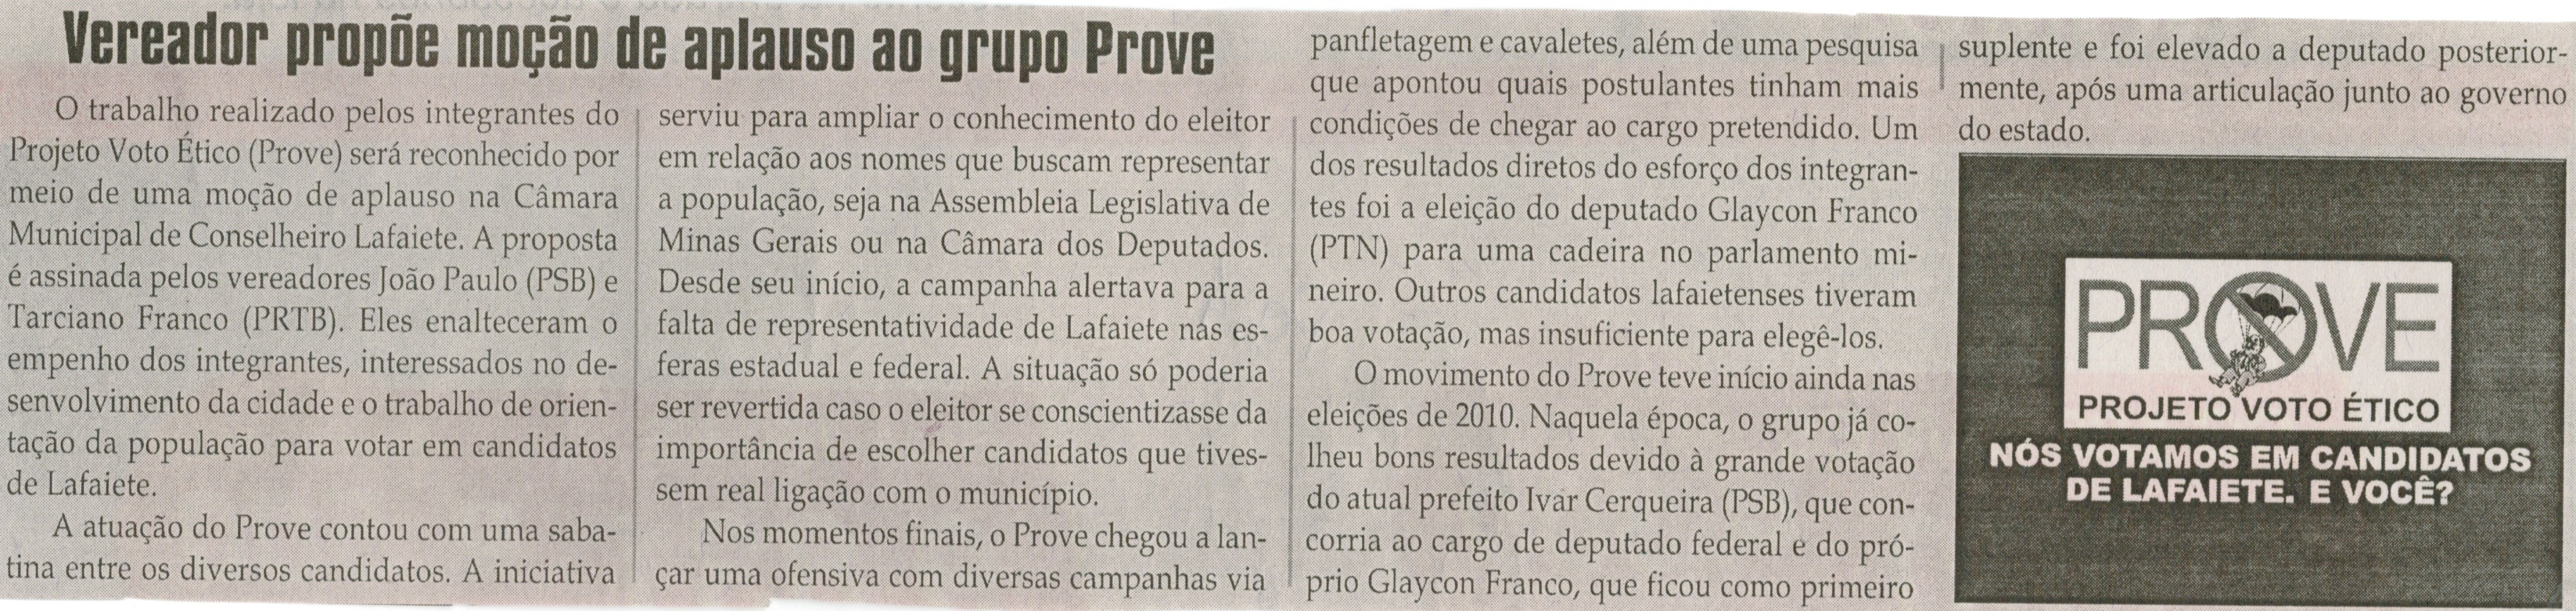 Vereador propõe moção de aplauso ao grupo Prove. Jornal Correio da Cidade, Conselheiro Lafaiete, 01 nov. 2014, p. 4.